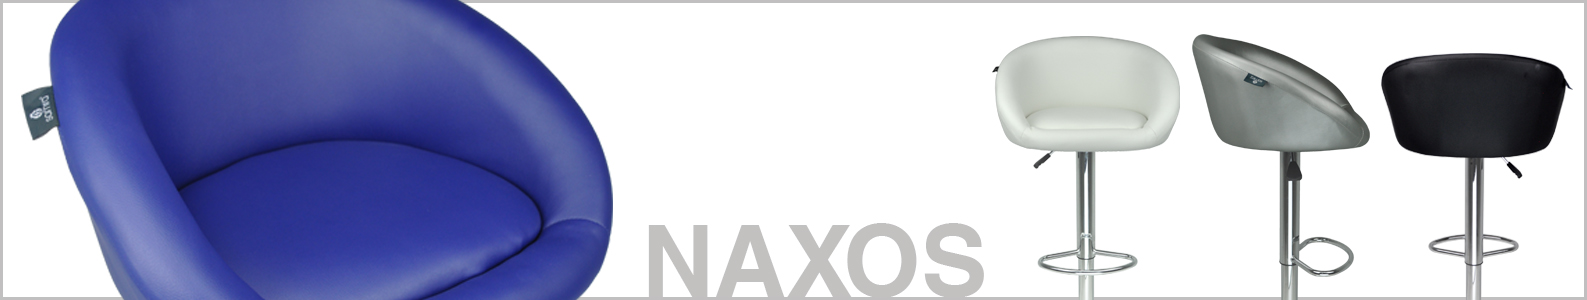 Sgabello da bar bianco in ecopelle, sgabello da cucina mod. Naxos Naxos